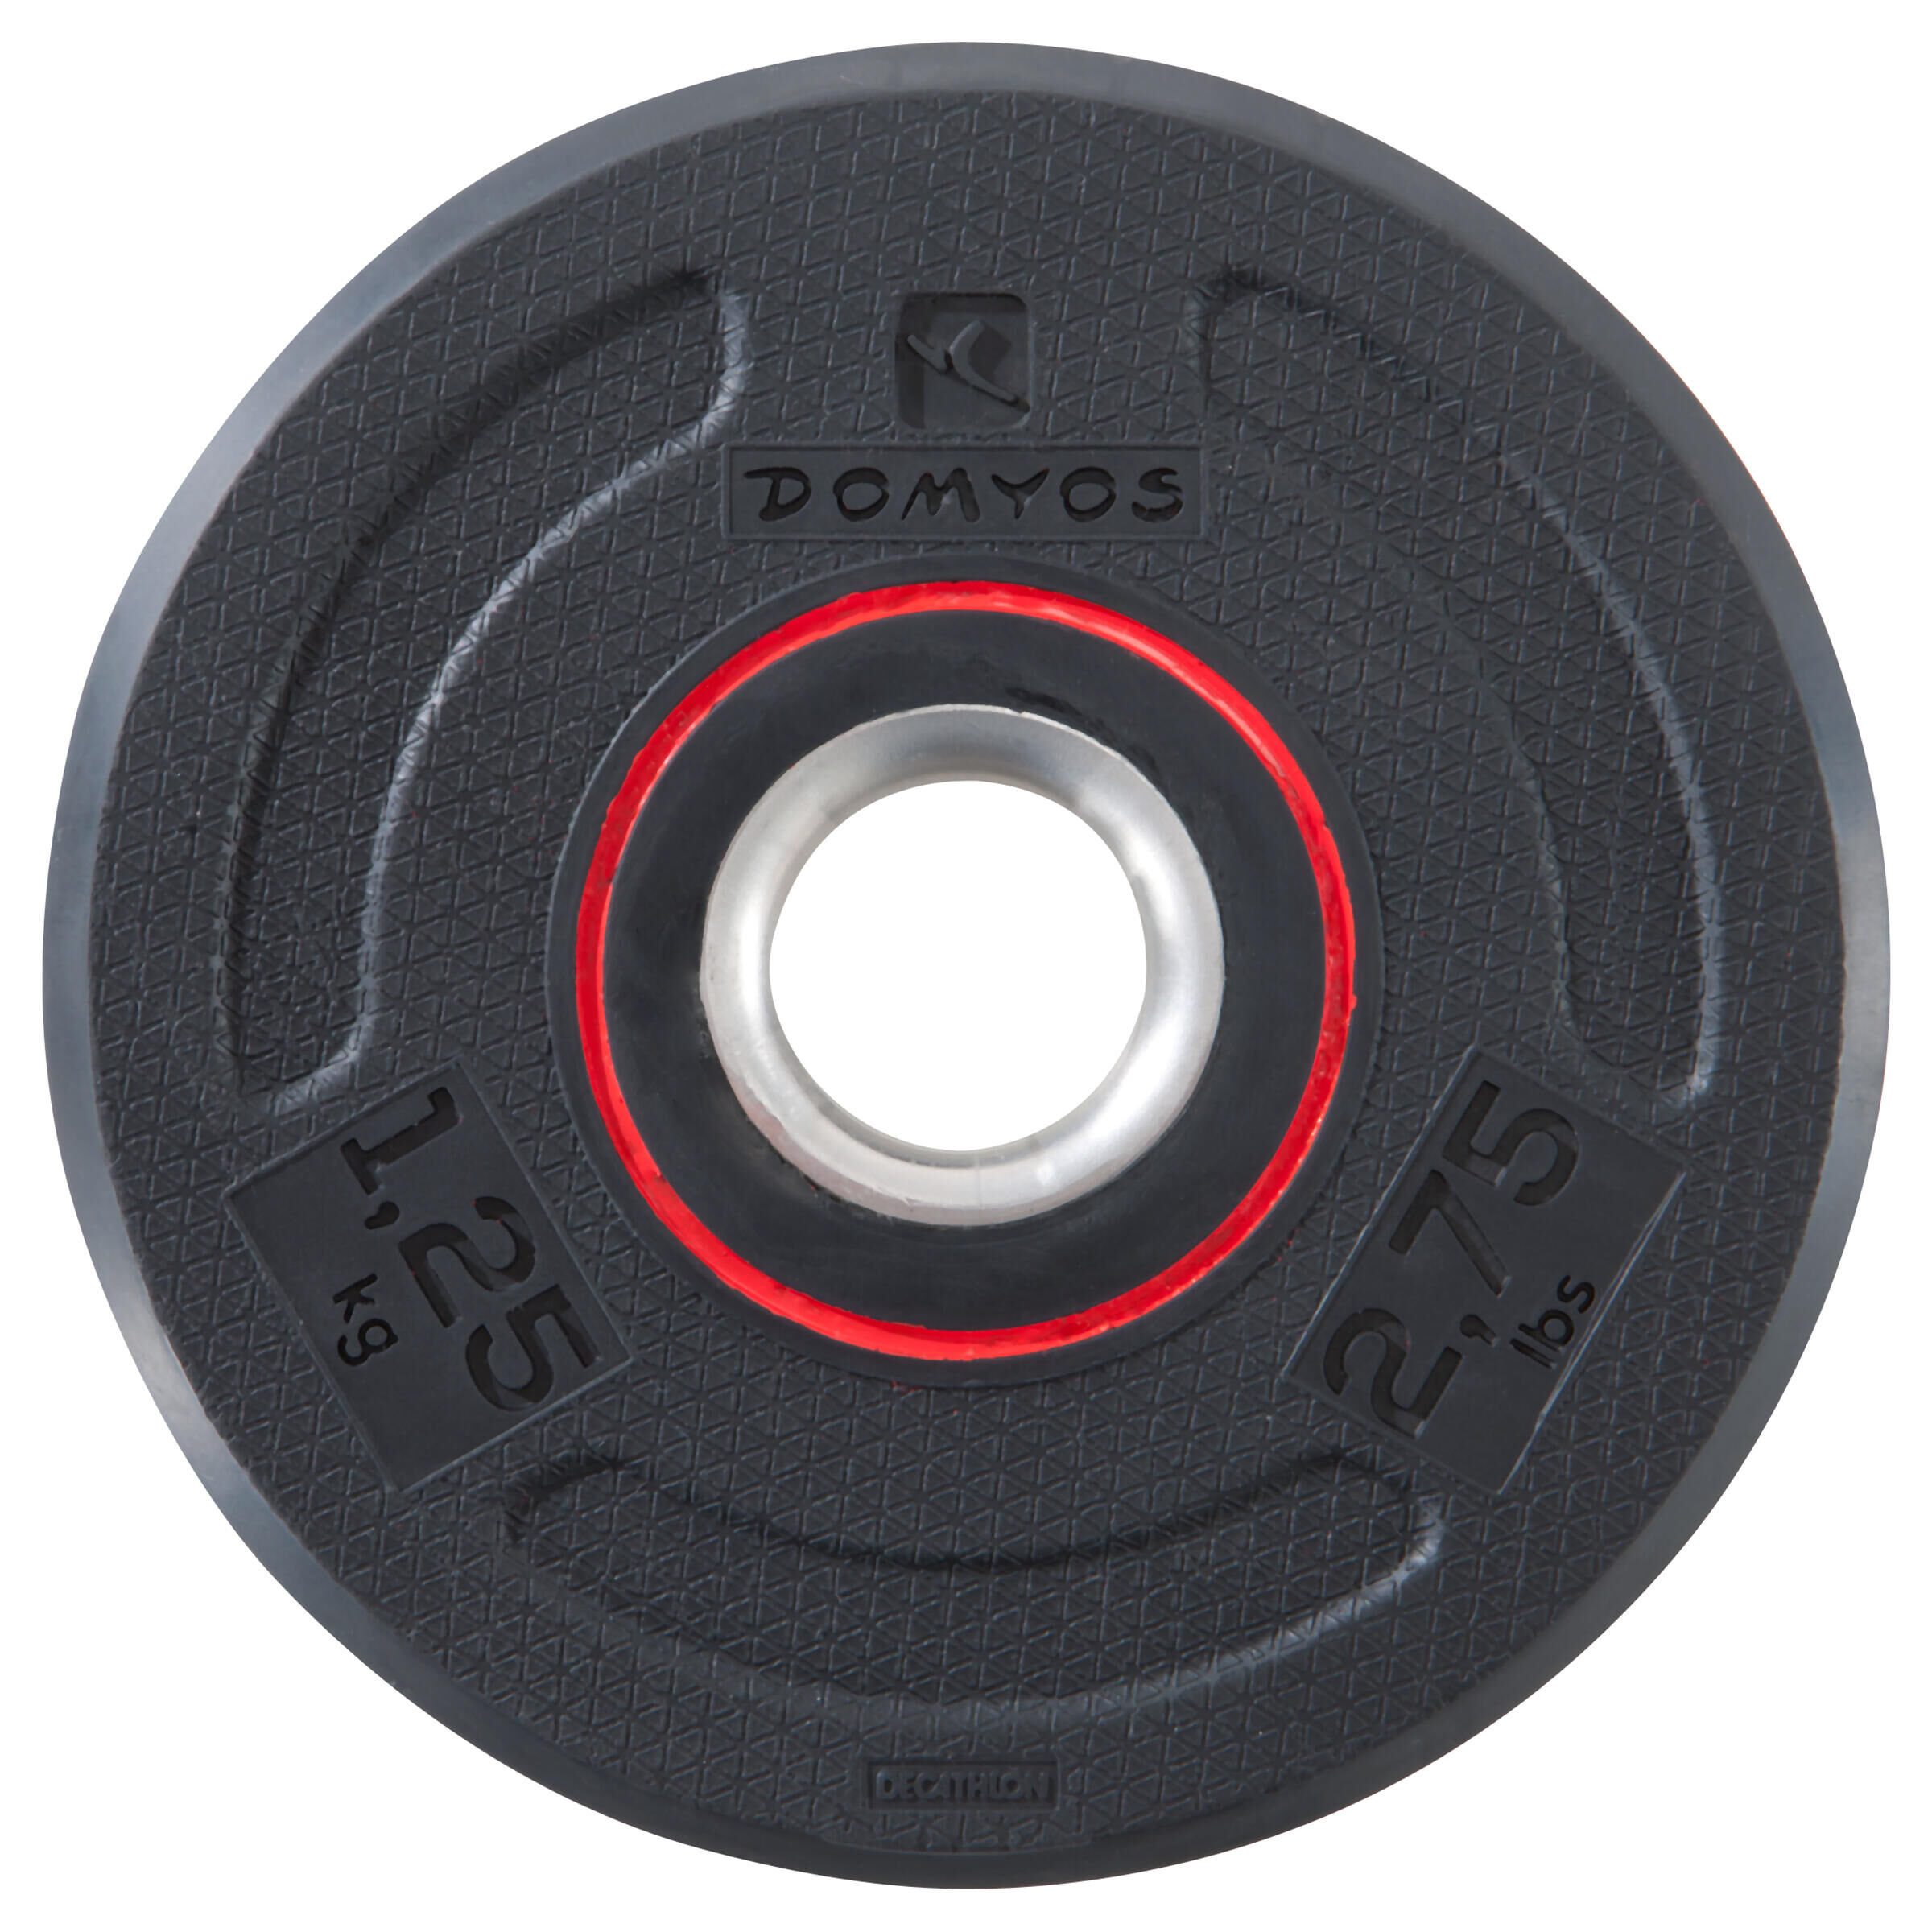 CORENGTH Rubber Weight Training Disc Weight - 1.25 kg 28 mm